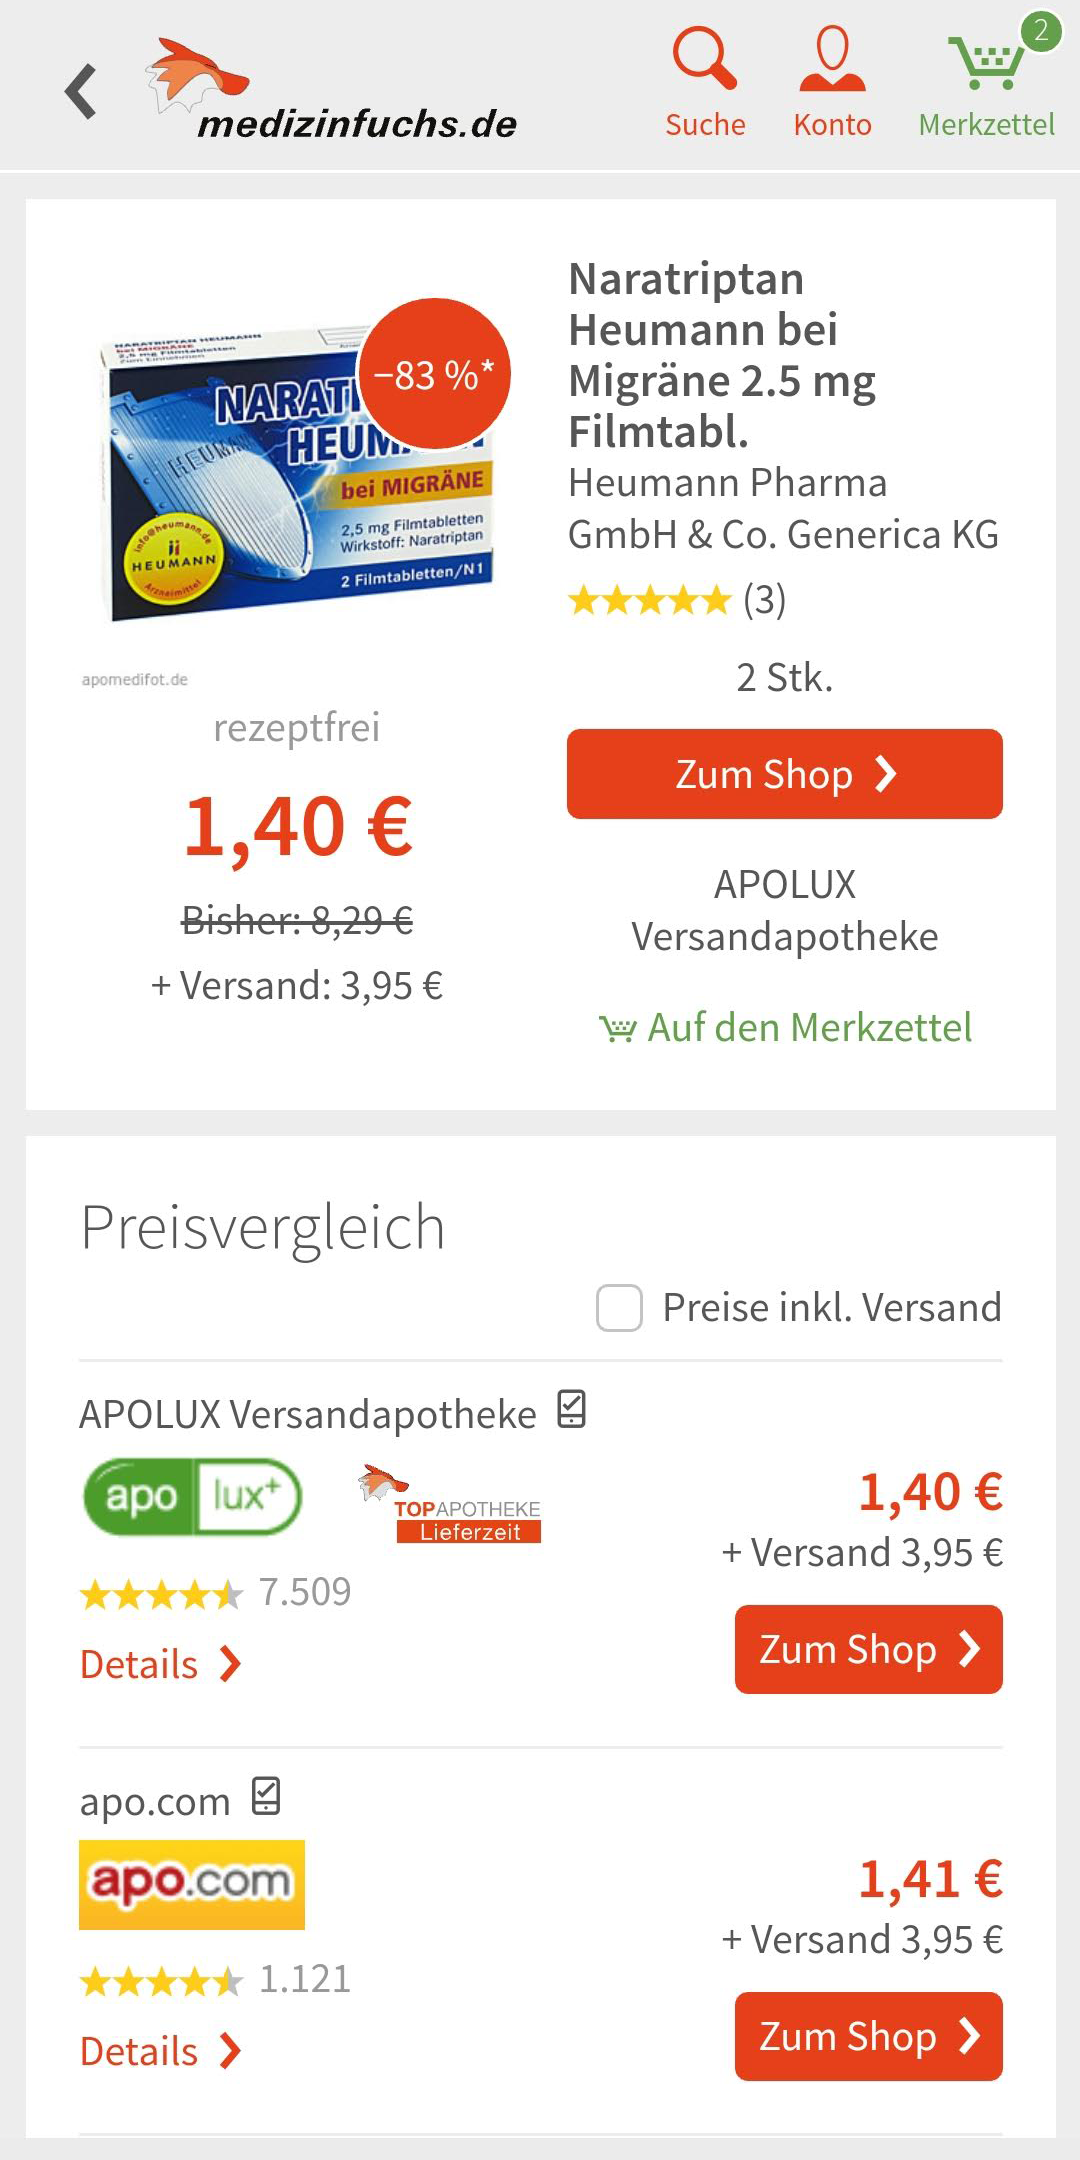 Android application medizinfuchs App - Preisvergleich und Angebote screenshort